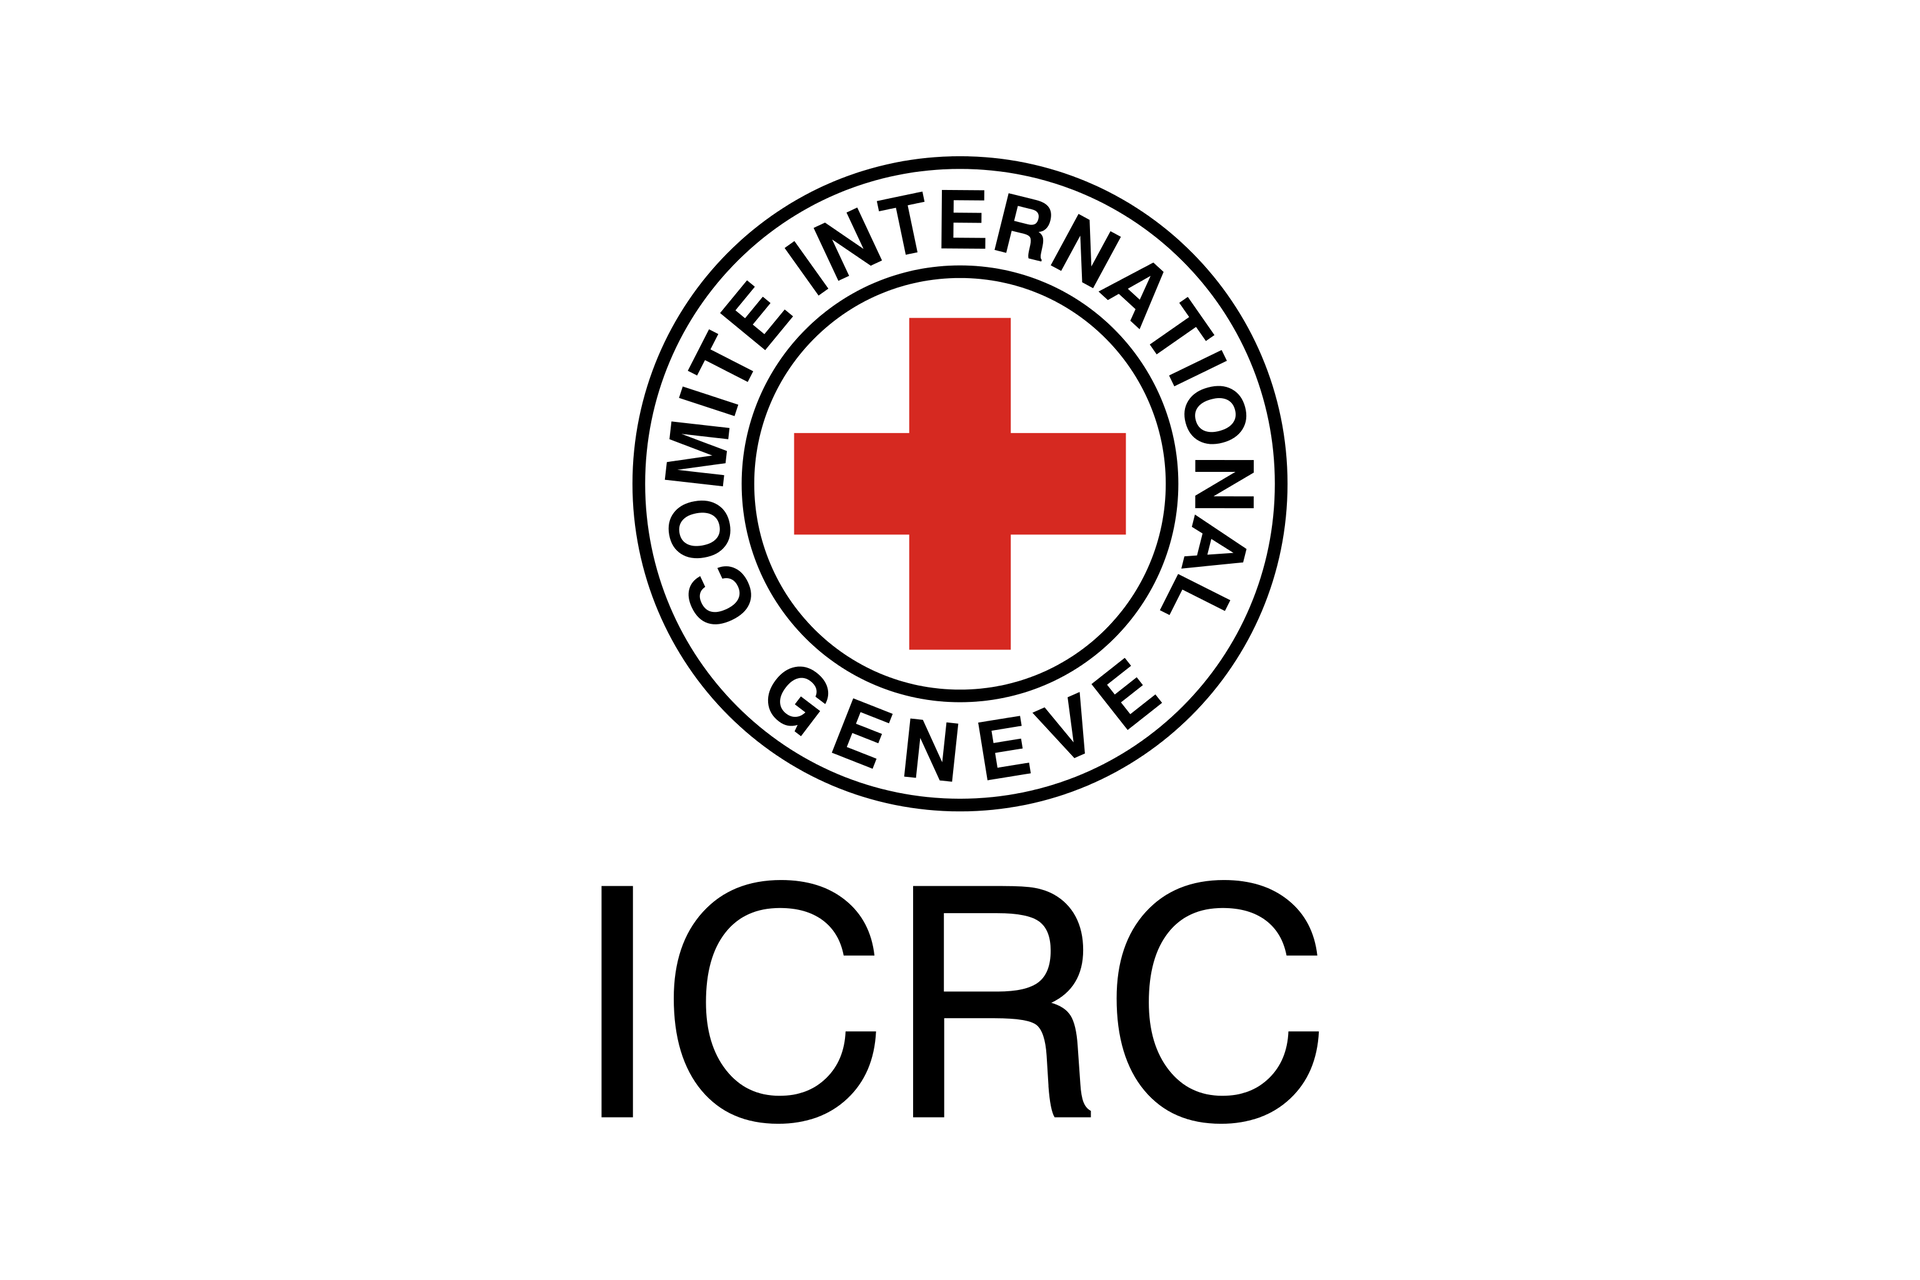 Ilustracja przedstawia logo międzynarodowej Organizacji Czerwonego Krzyża. Dwa czarne okręgi na białym tle. Pomiędzy okręgiem zewnętrznym i wewnętrznym czarny napis: GENEVE COMITE INTERNATIONAL. Wewnątrz okręgów znak czerwonego krzyża. Poniżej skrót ICRC.